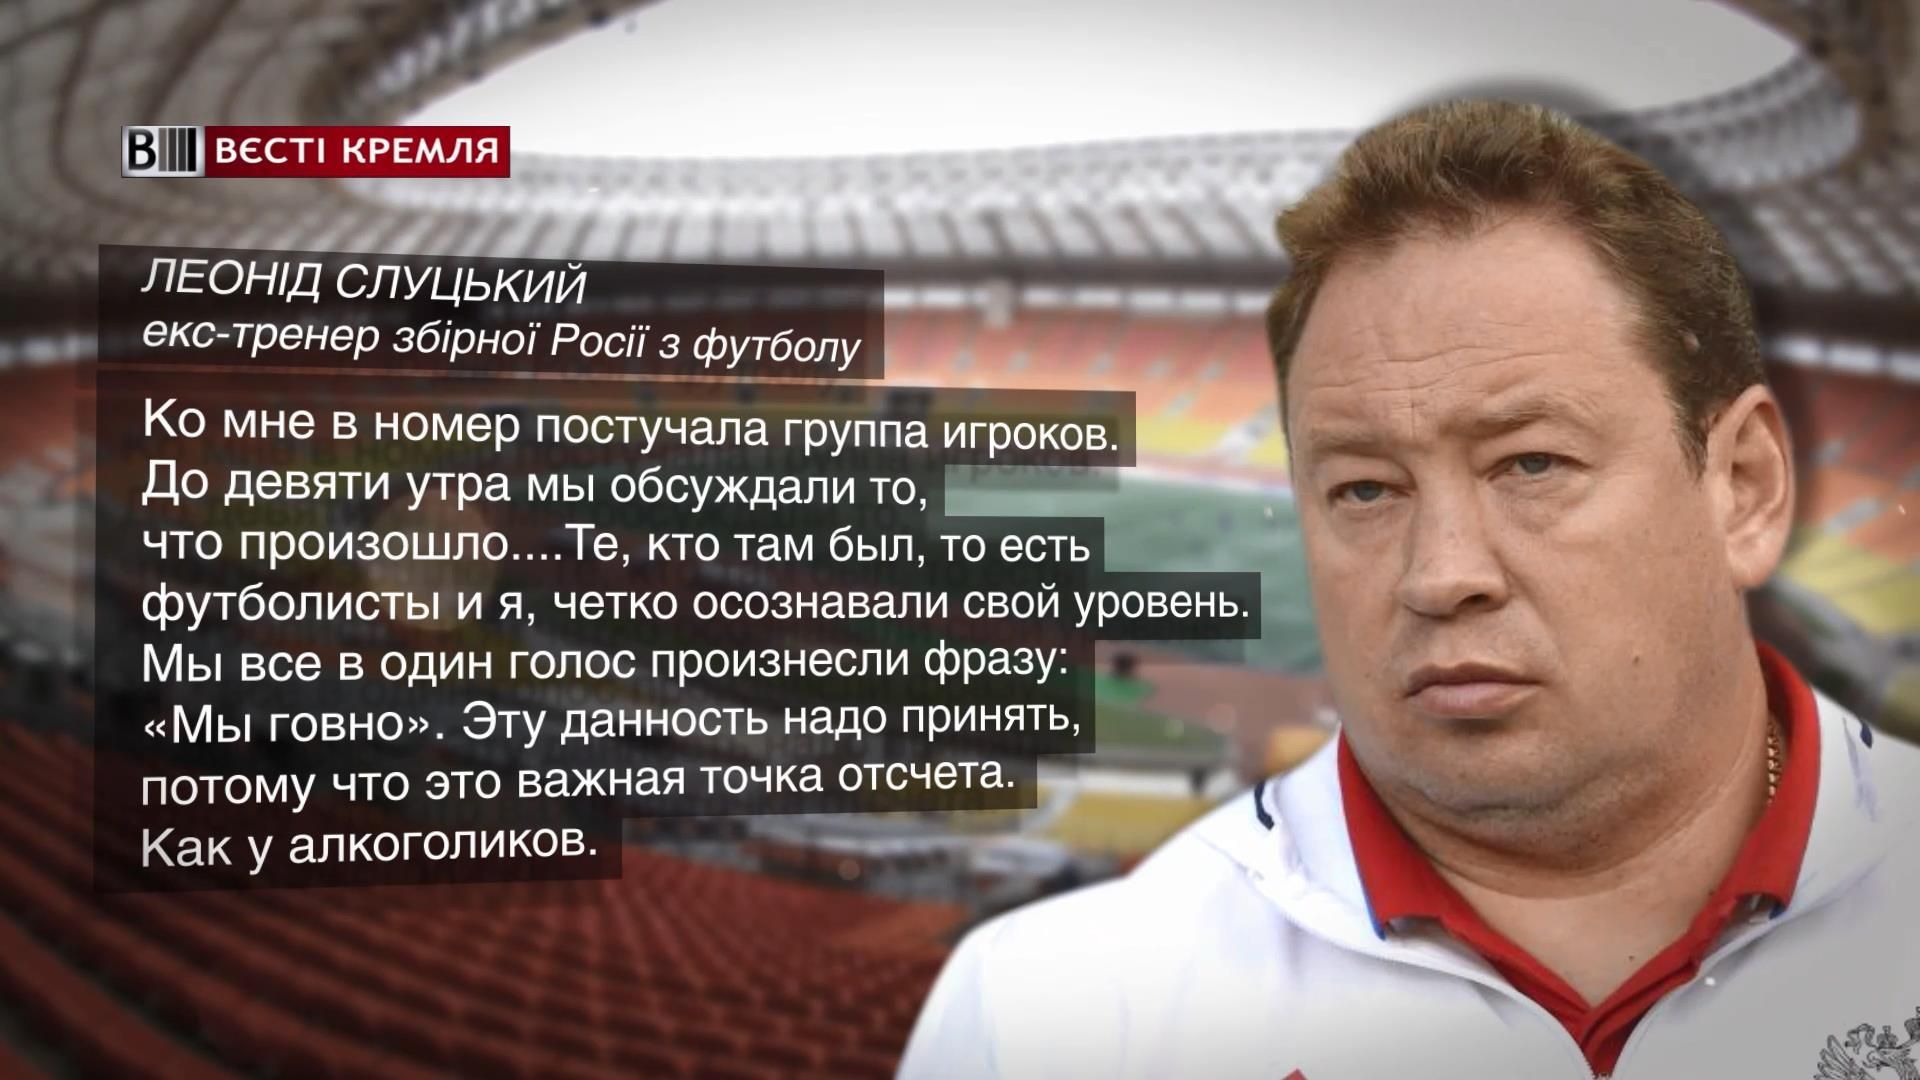 "Мы дерьмо": российские футболисты и тренер признали уровень игры своей сборной